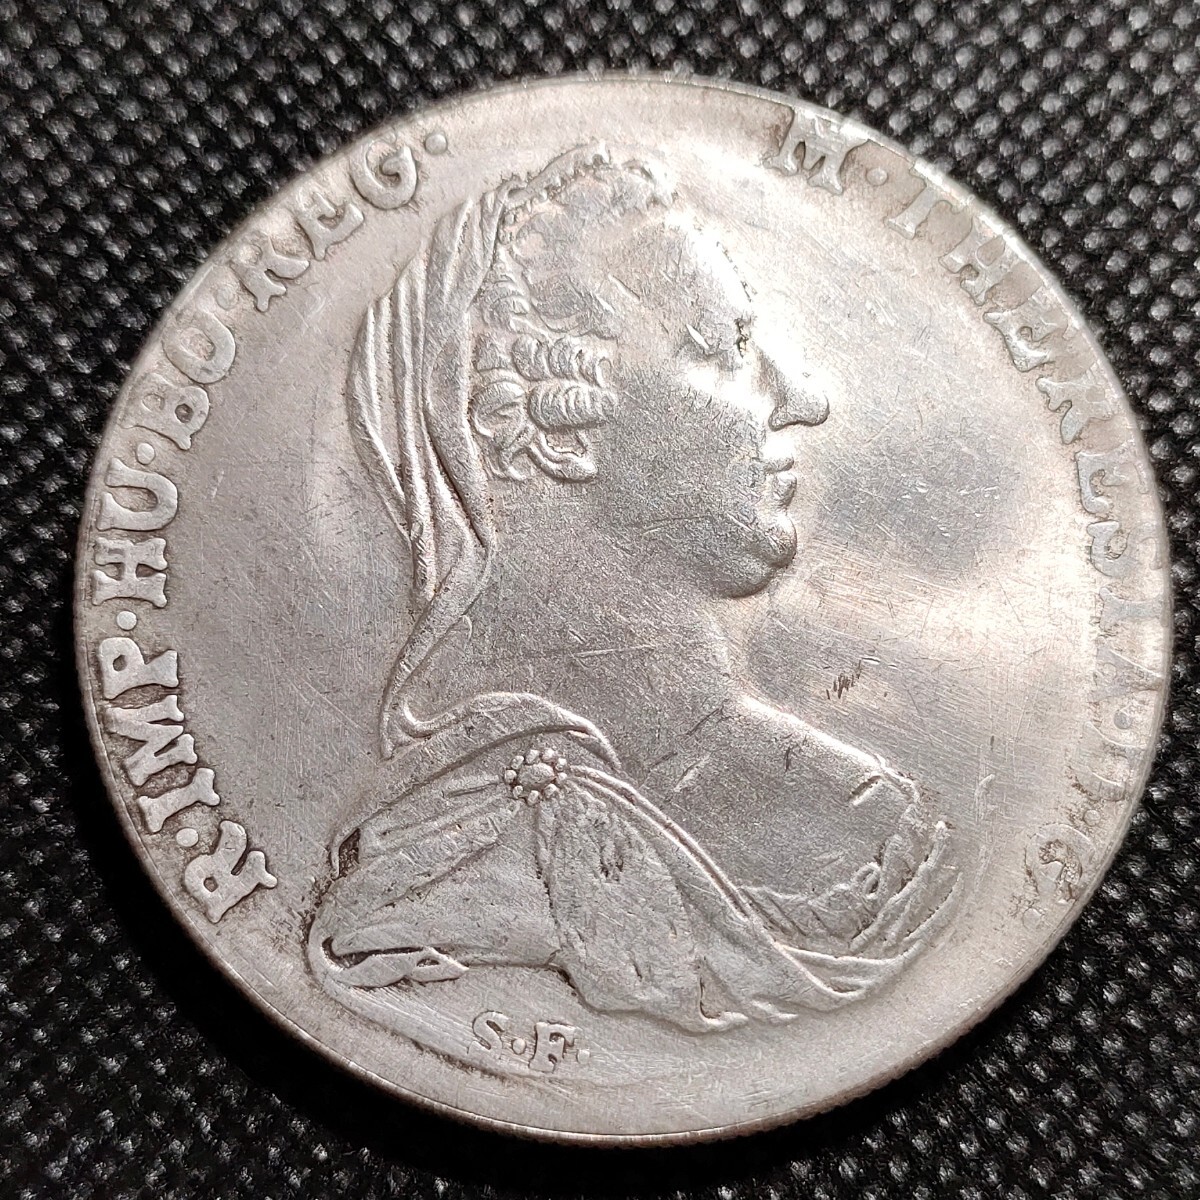 4501 オーストリア マリア・テレジア 約45mm 海外古銭 アンティークコインの画像1